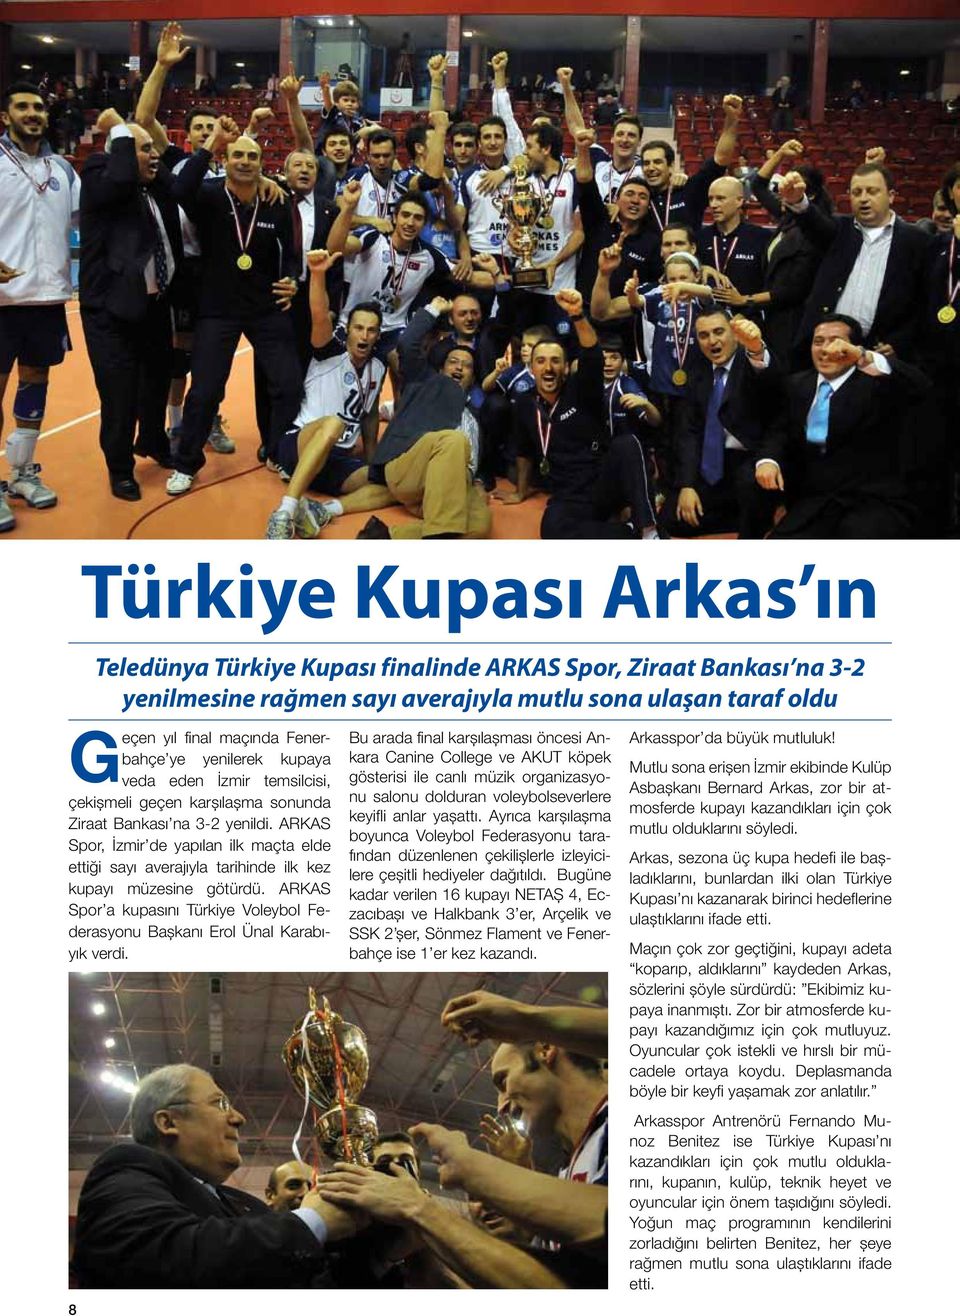 ARKAS Spor, İzmir de yapılan ilk maçta elde ettiği sayı averajıyla tarihinde ilk kez kupayı müzesine götürdü. ARKAS Spor a kupasını Türkiye Voleybol Federasyonu Başkanı Erol Ünal Karabıyık verdi.